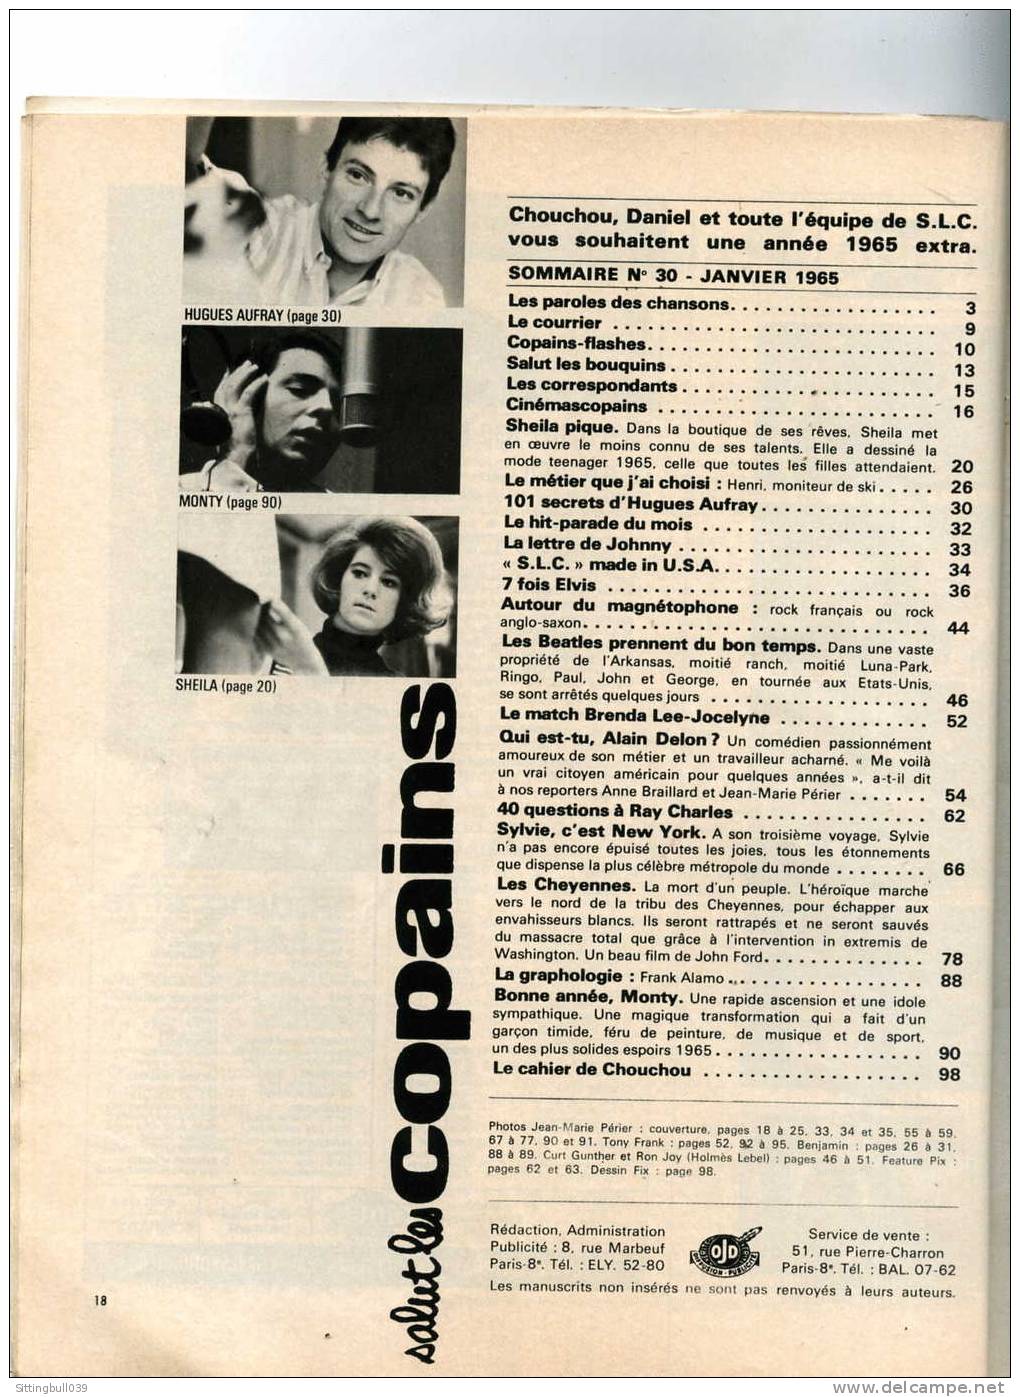 SALUT LES COPAINS N° 30 (SLC) JANV. 1965. SYLVIE VARTAN, LES BEATLES, ELVIS, ALAIN DELON, Etc. SUPERBES PHOTOS. - Music